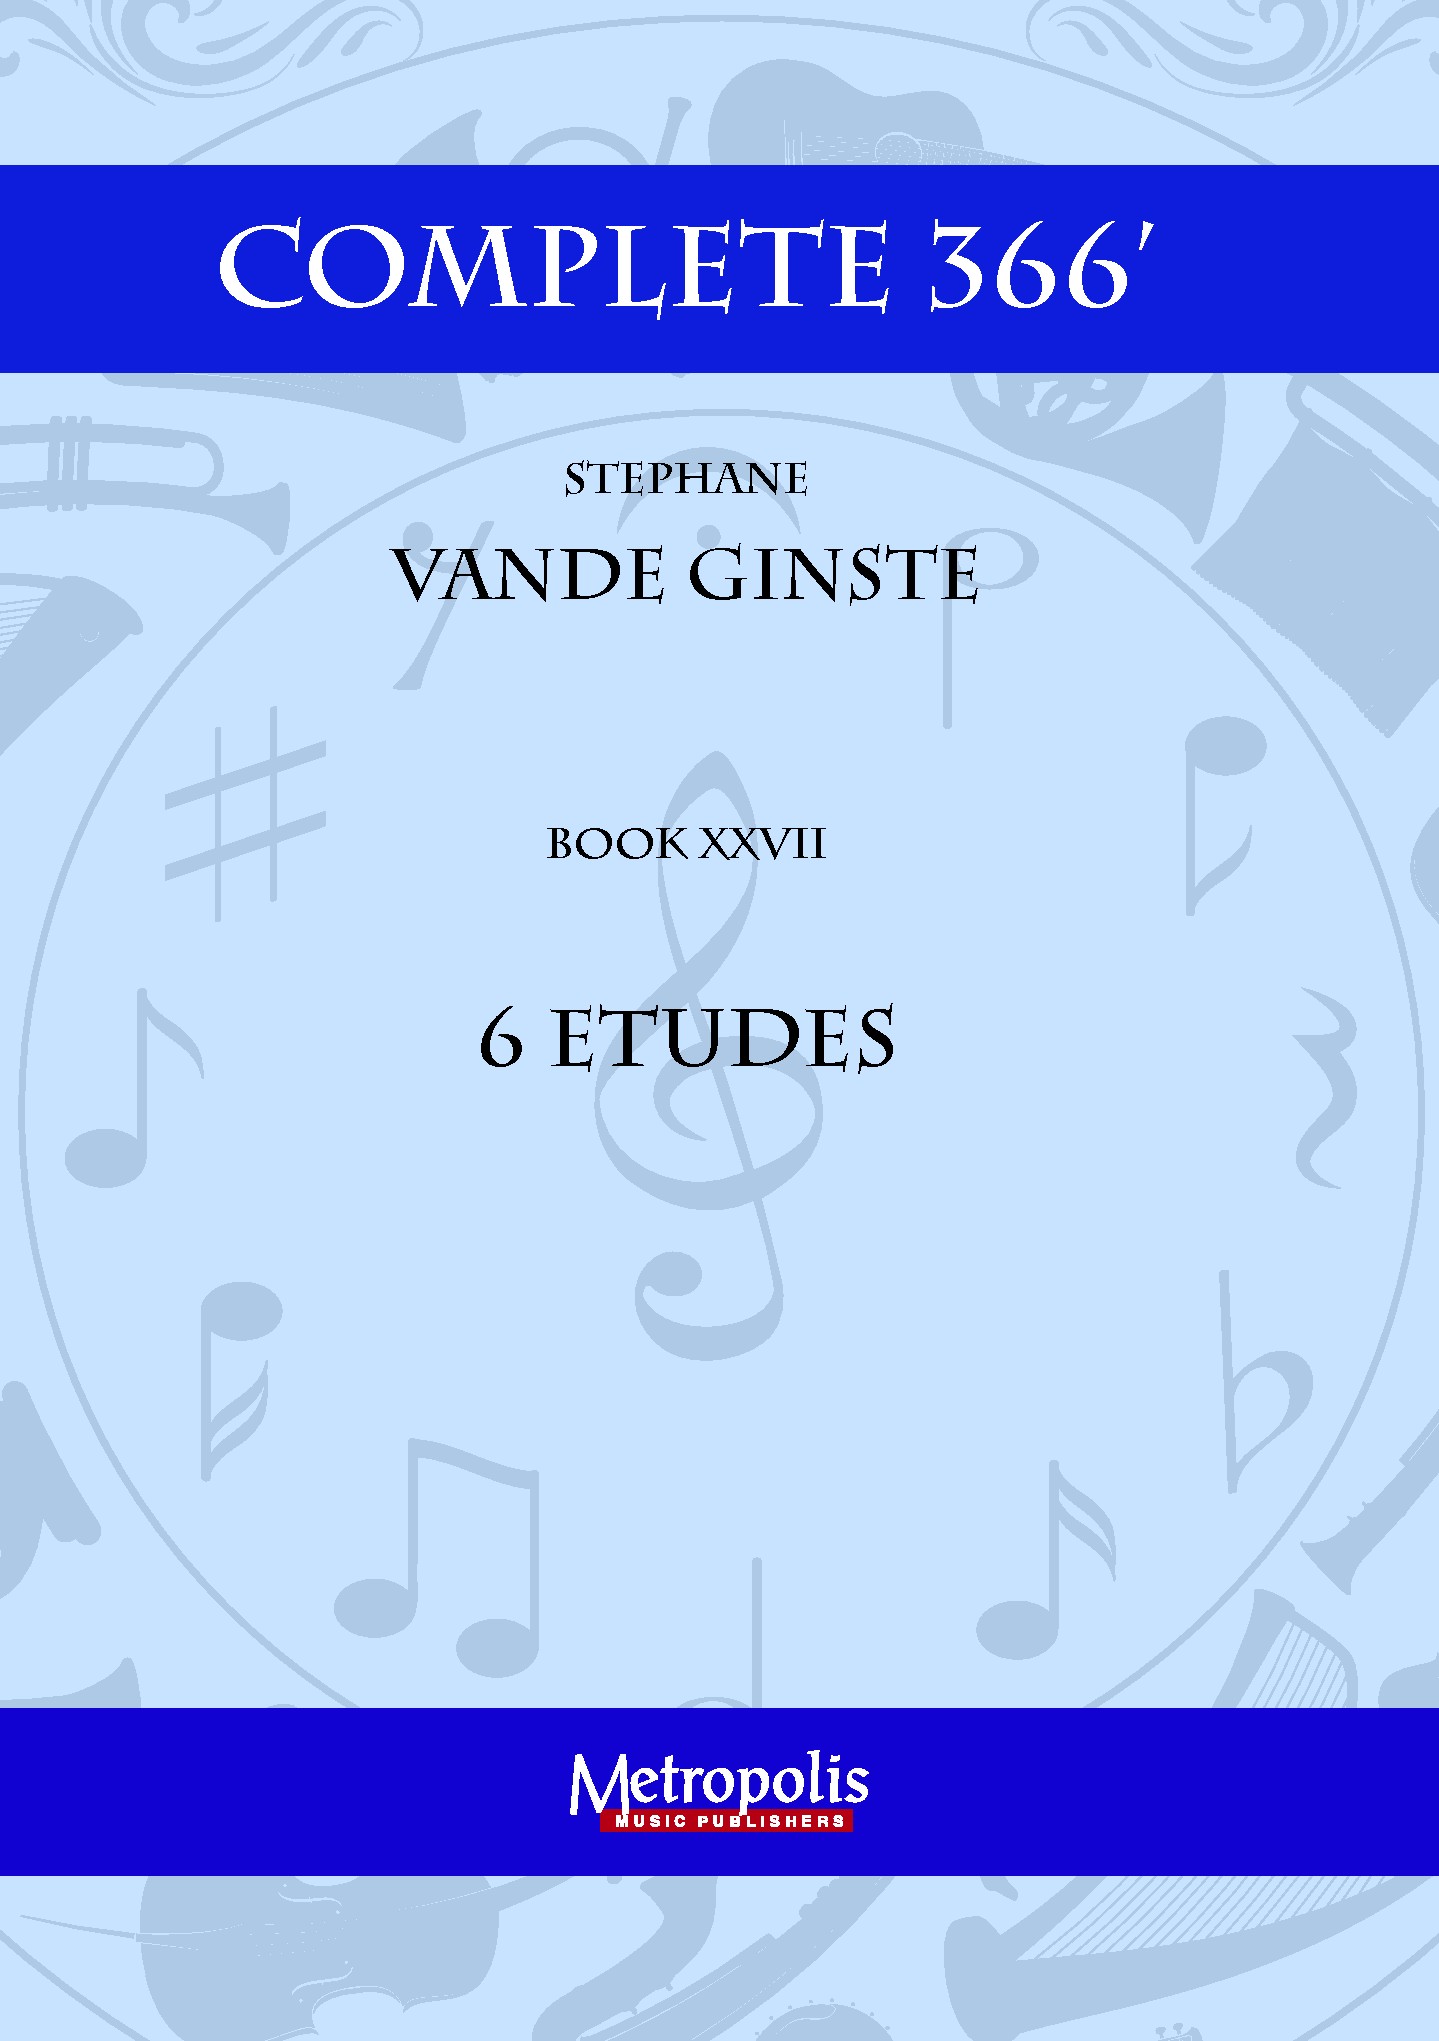 Complete 366' Book Xxvii 6 Etudes (VANDE GINSTE STEPHANE)